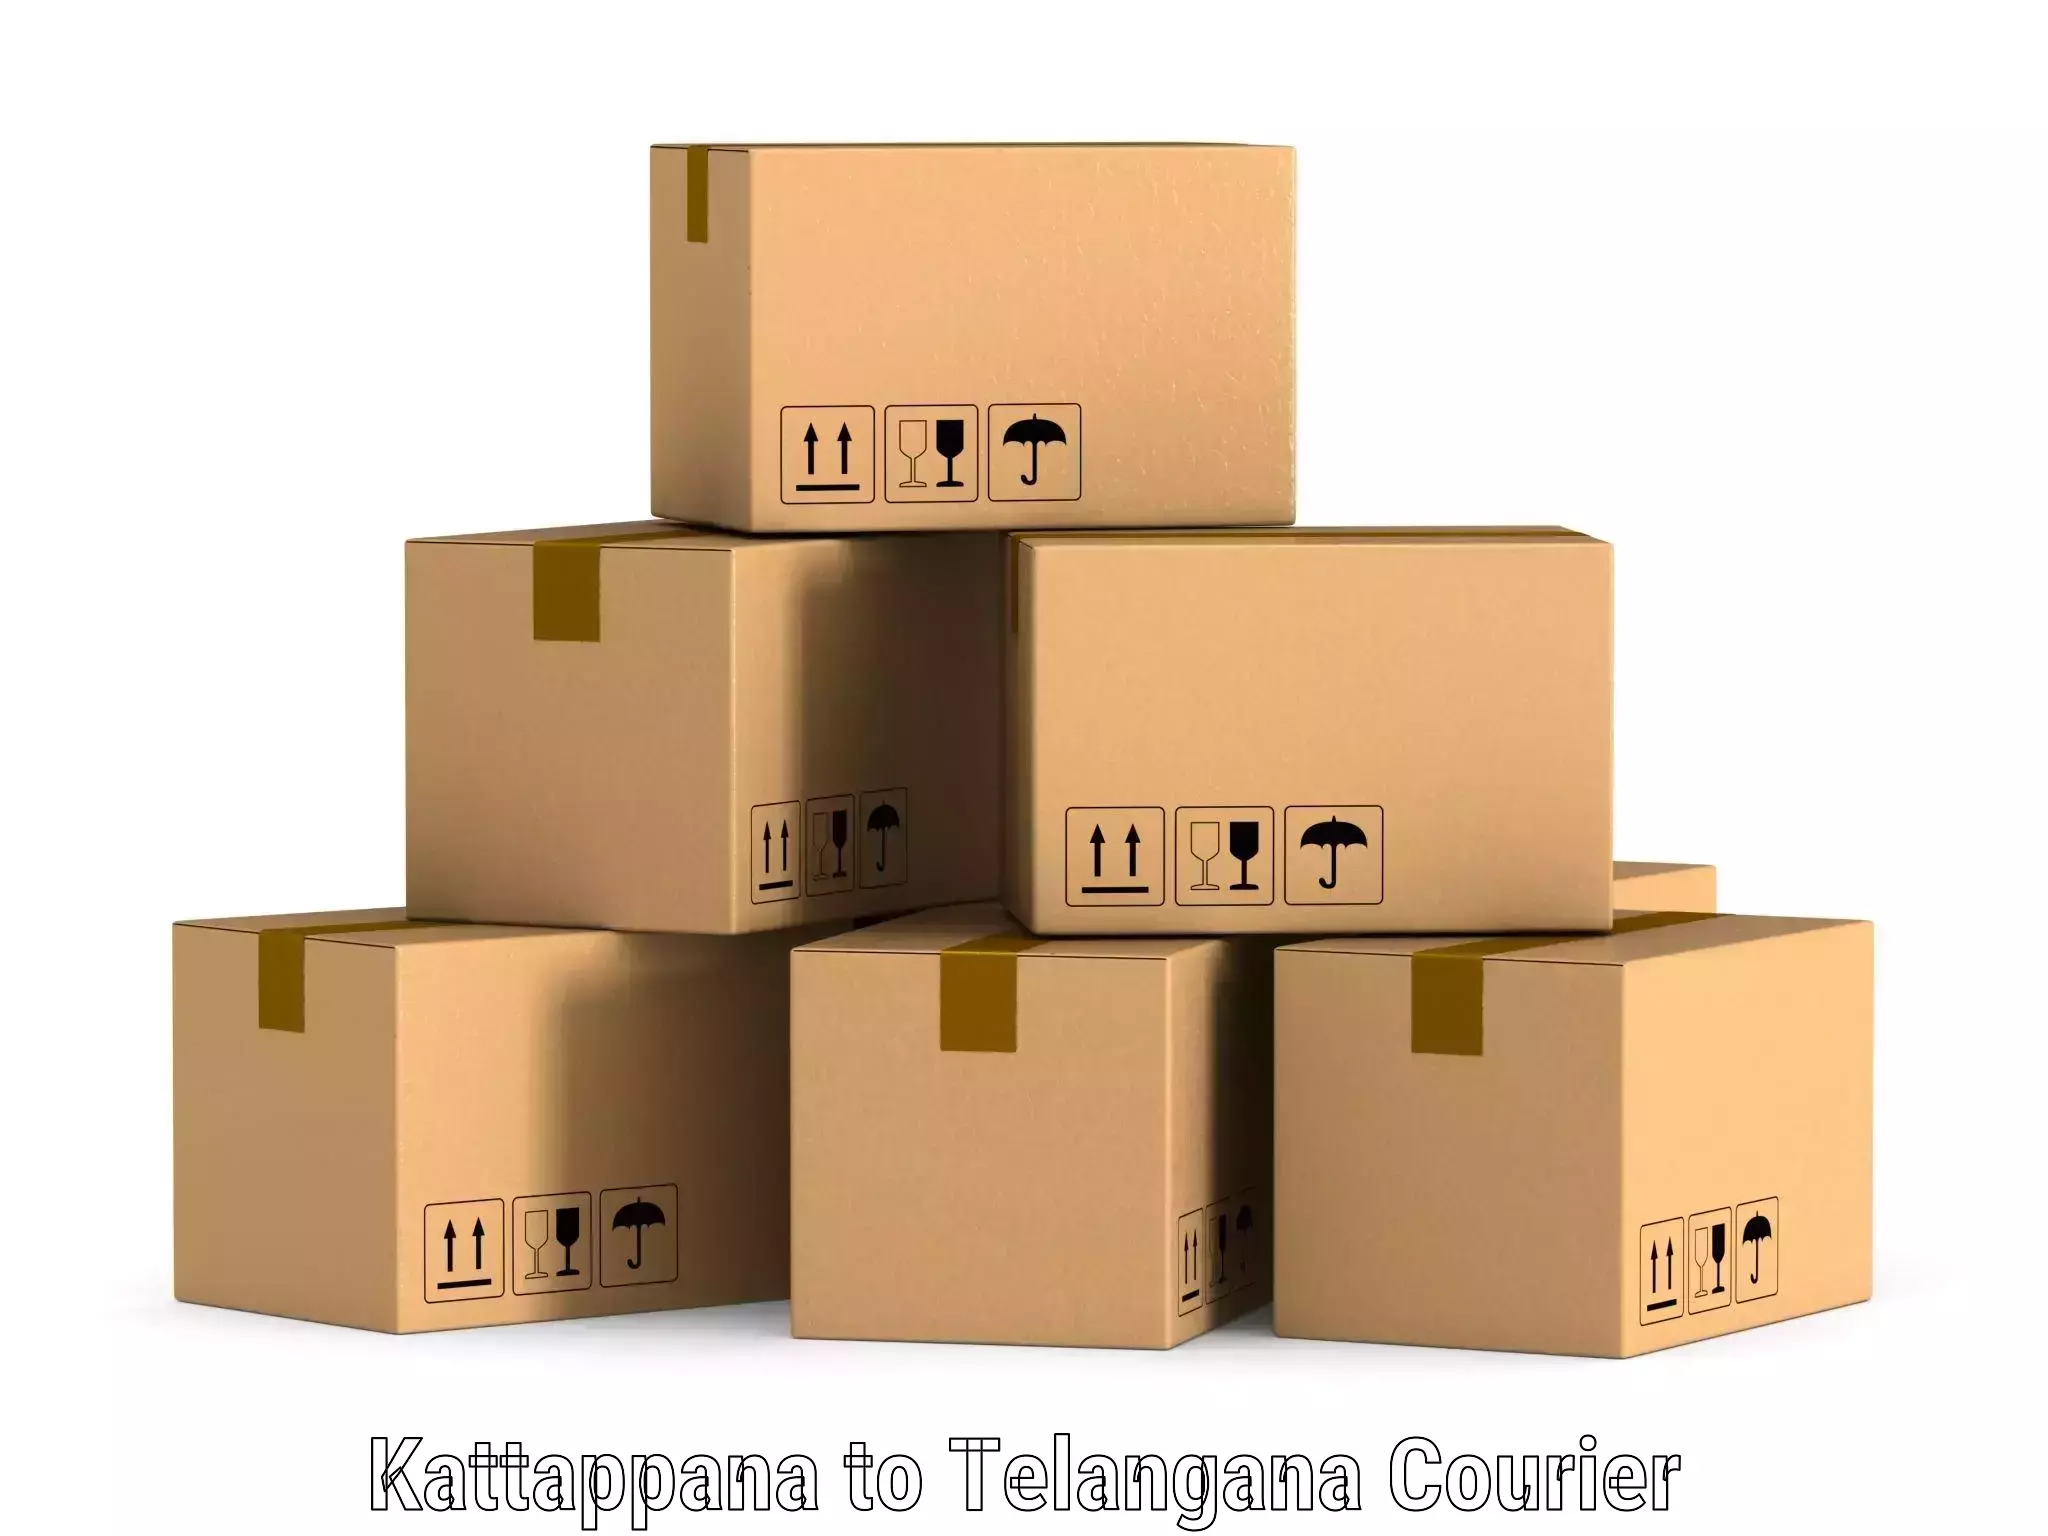 Enhanced shipping experience in Kattappana to Shamshabad